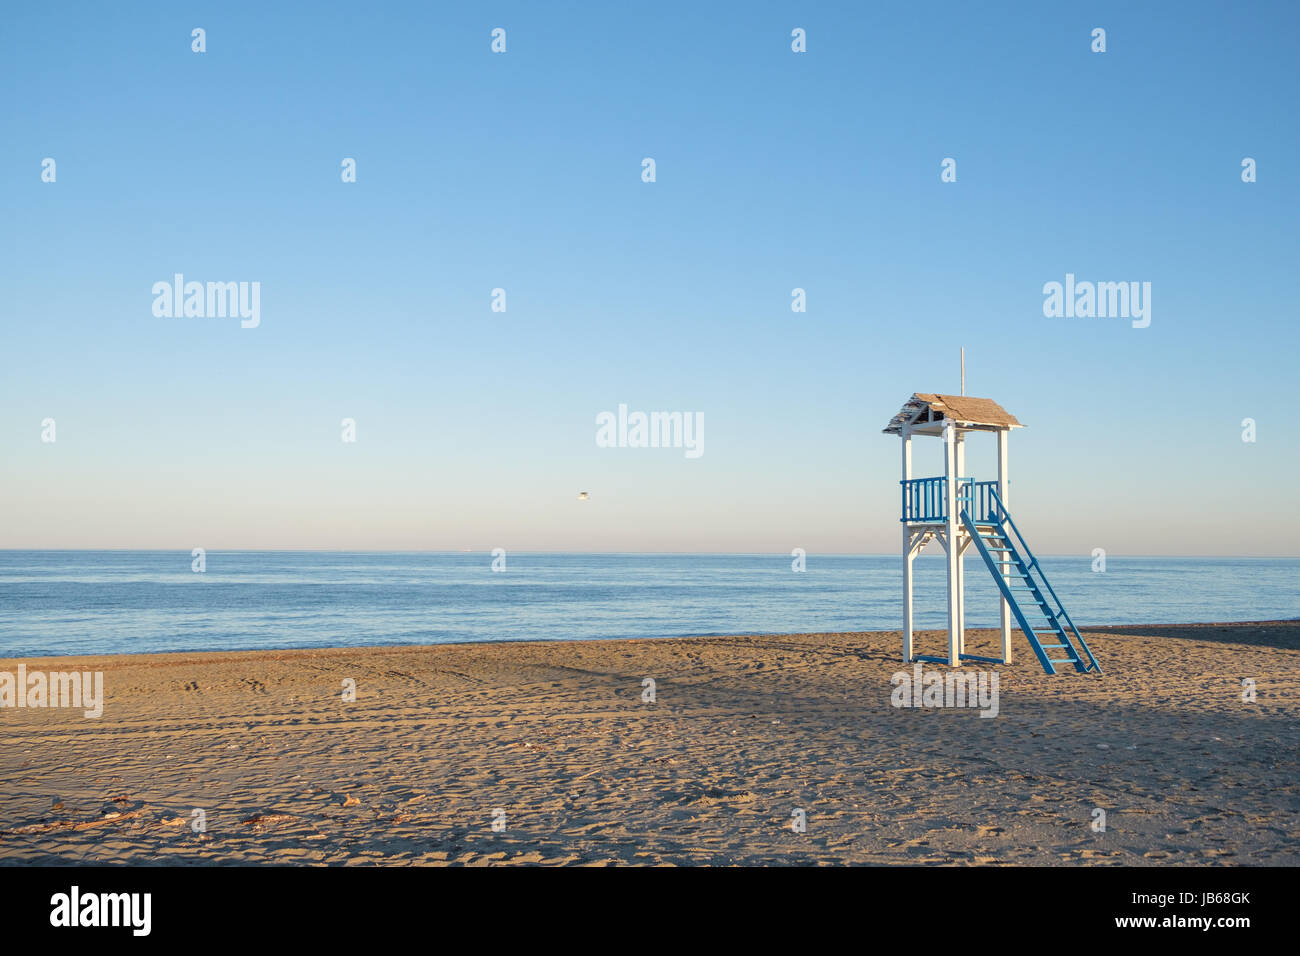 Azul y blanco cabaña protector de la vida en una playa al atardecer. Foto de stock